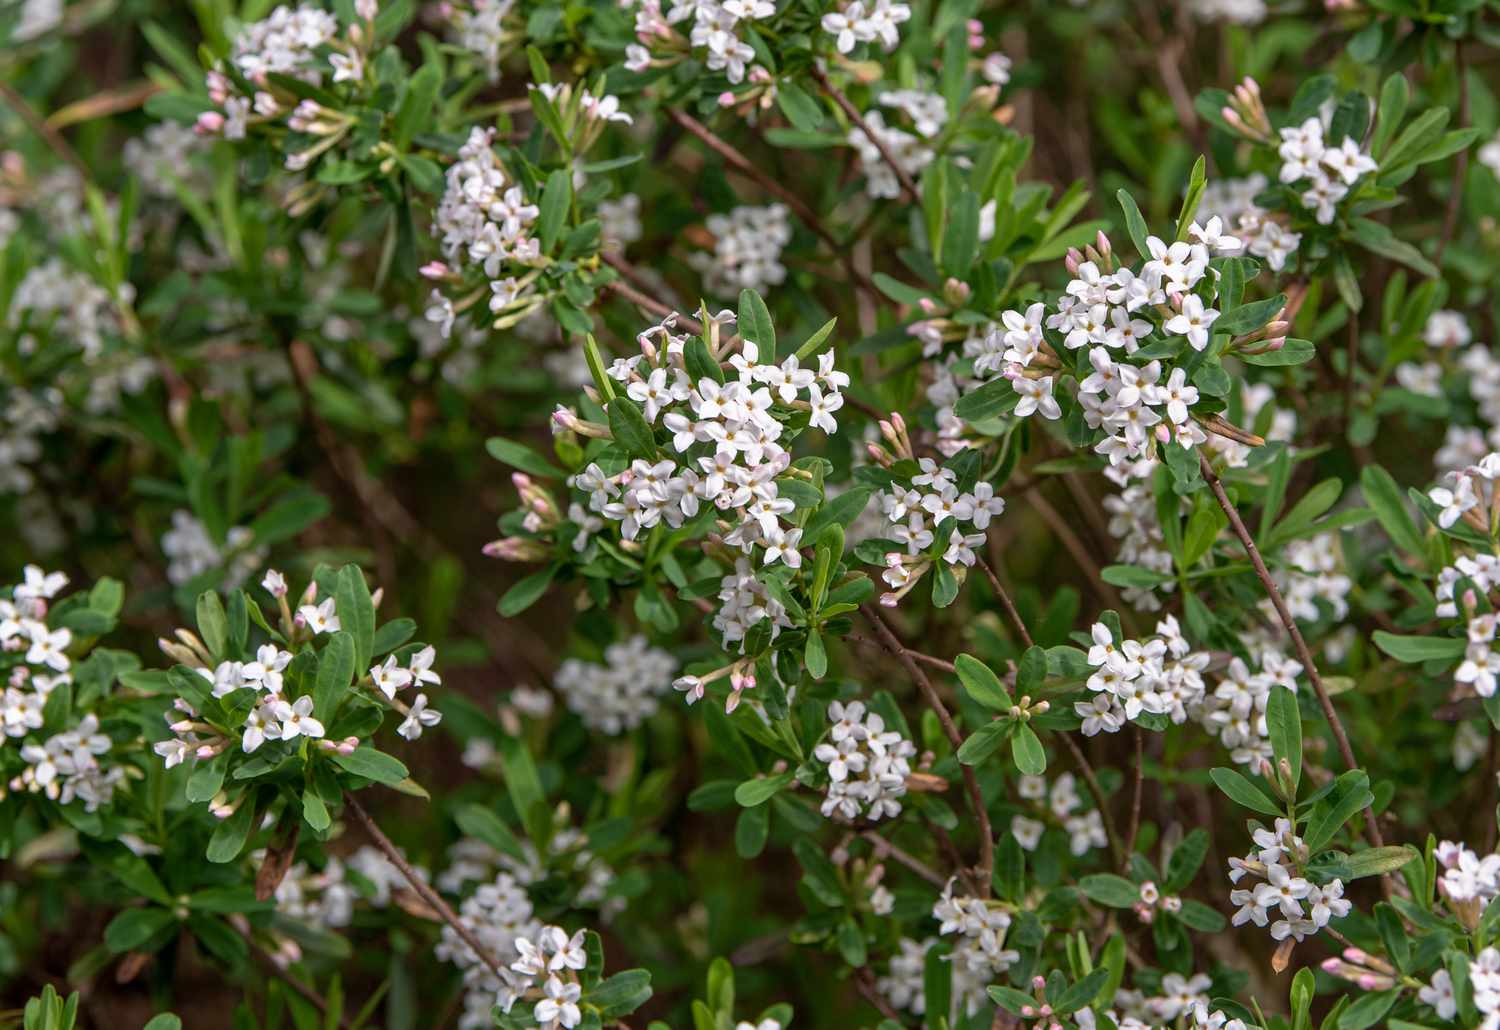 Planta Daphne con diminutas flores blancas sobre ramas de hojas cortas y ovaladas